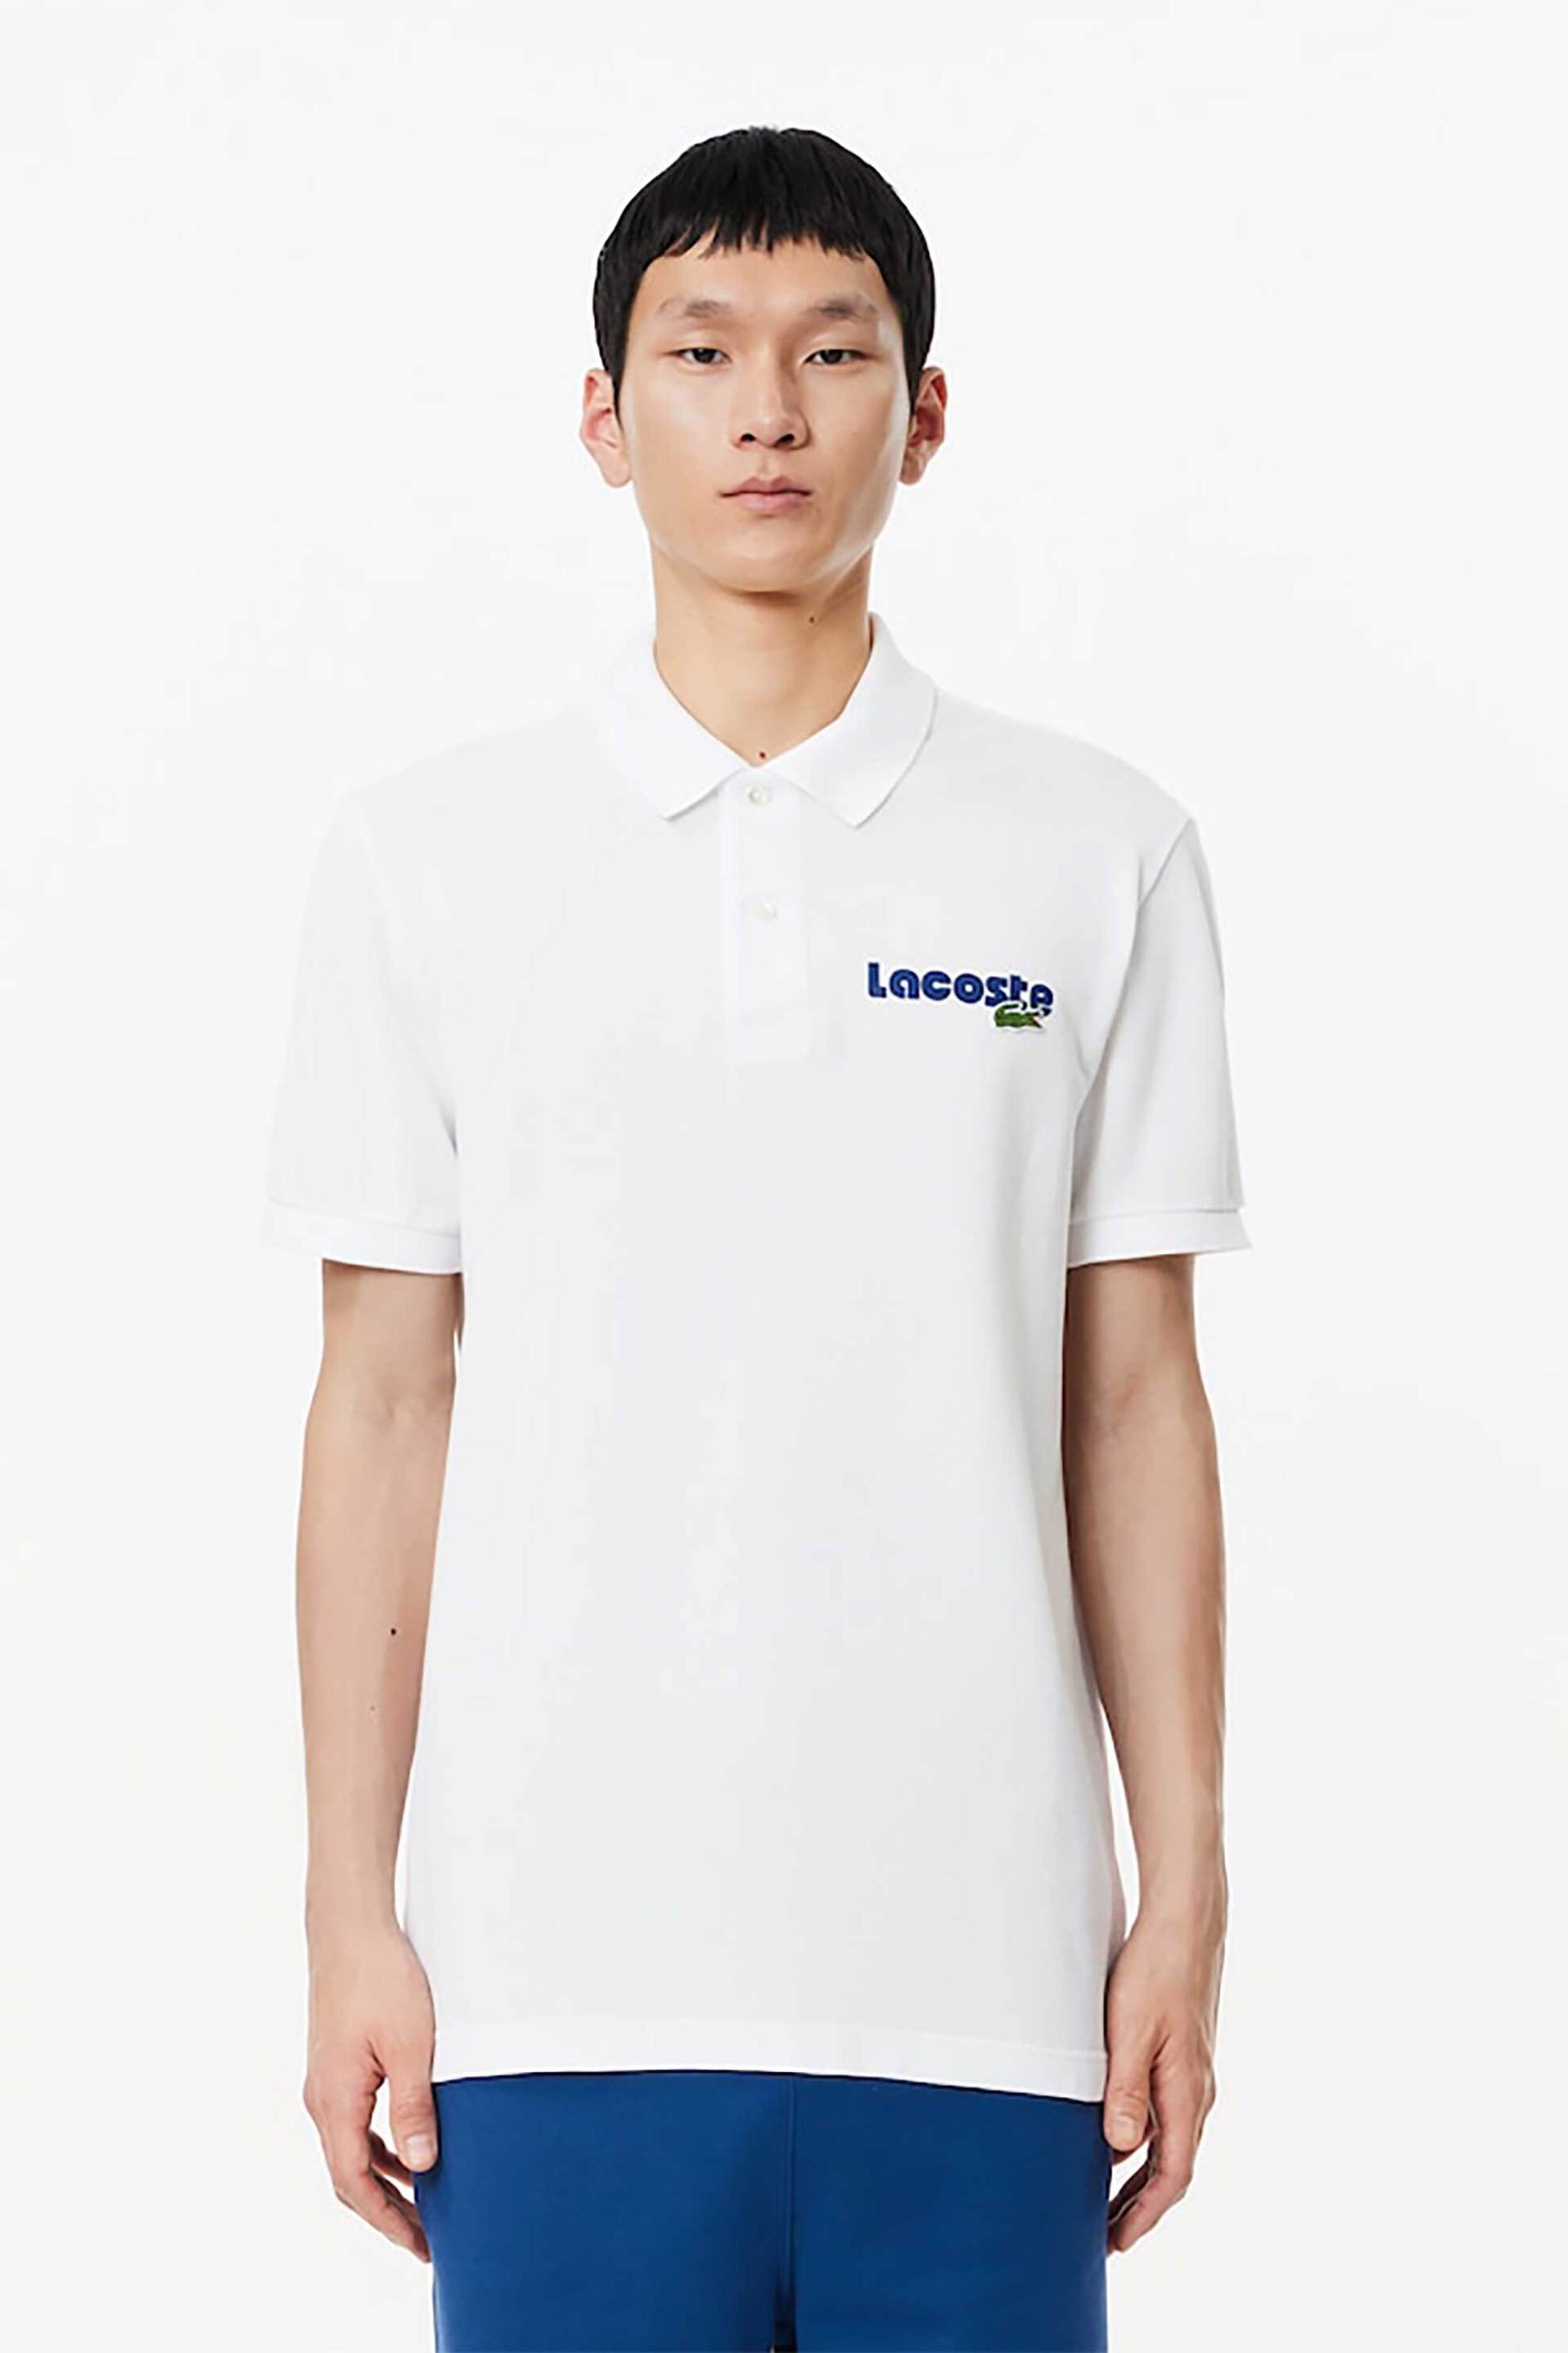 Ανδρική Μόδα > Ανδρικά Ρούχα > Ανδρικές Μπλούζες > Ανδρικές Μπλούζες Πολο Lacoste ανδρική πόλο μπλούζα πικέ με κεντημένο logo Regular Fit - PH7426 Λευκό